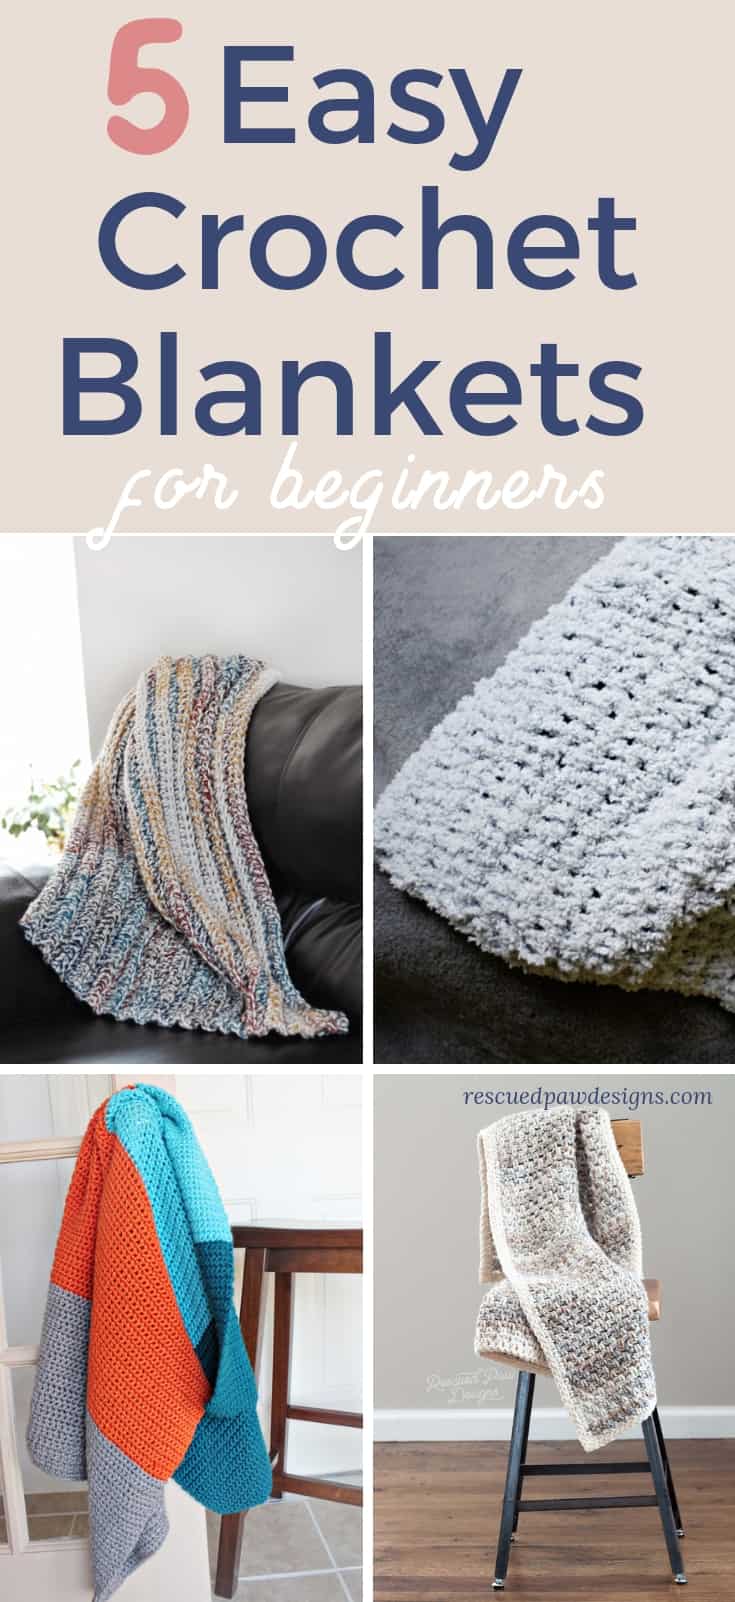 Easy Crochet Blankets for Beginners